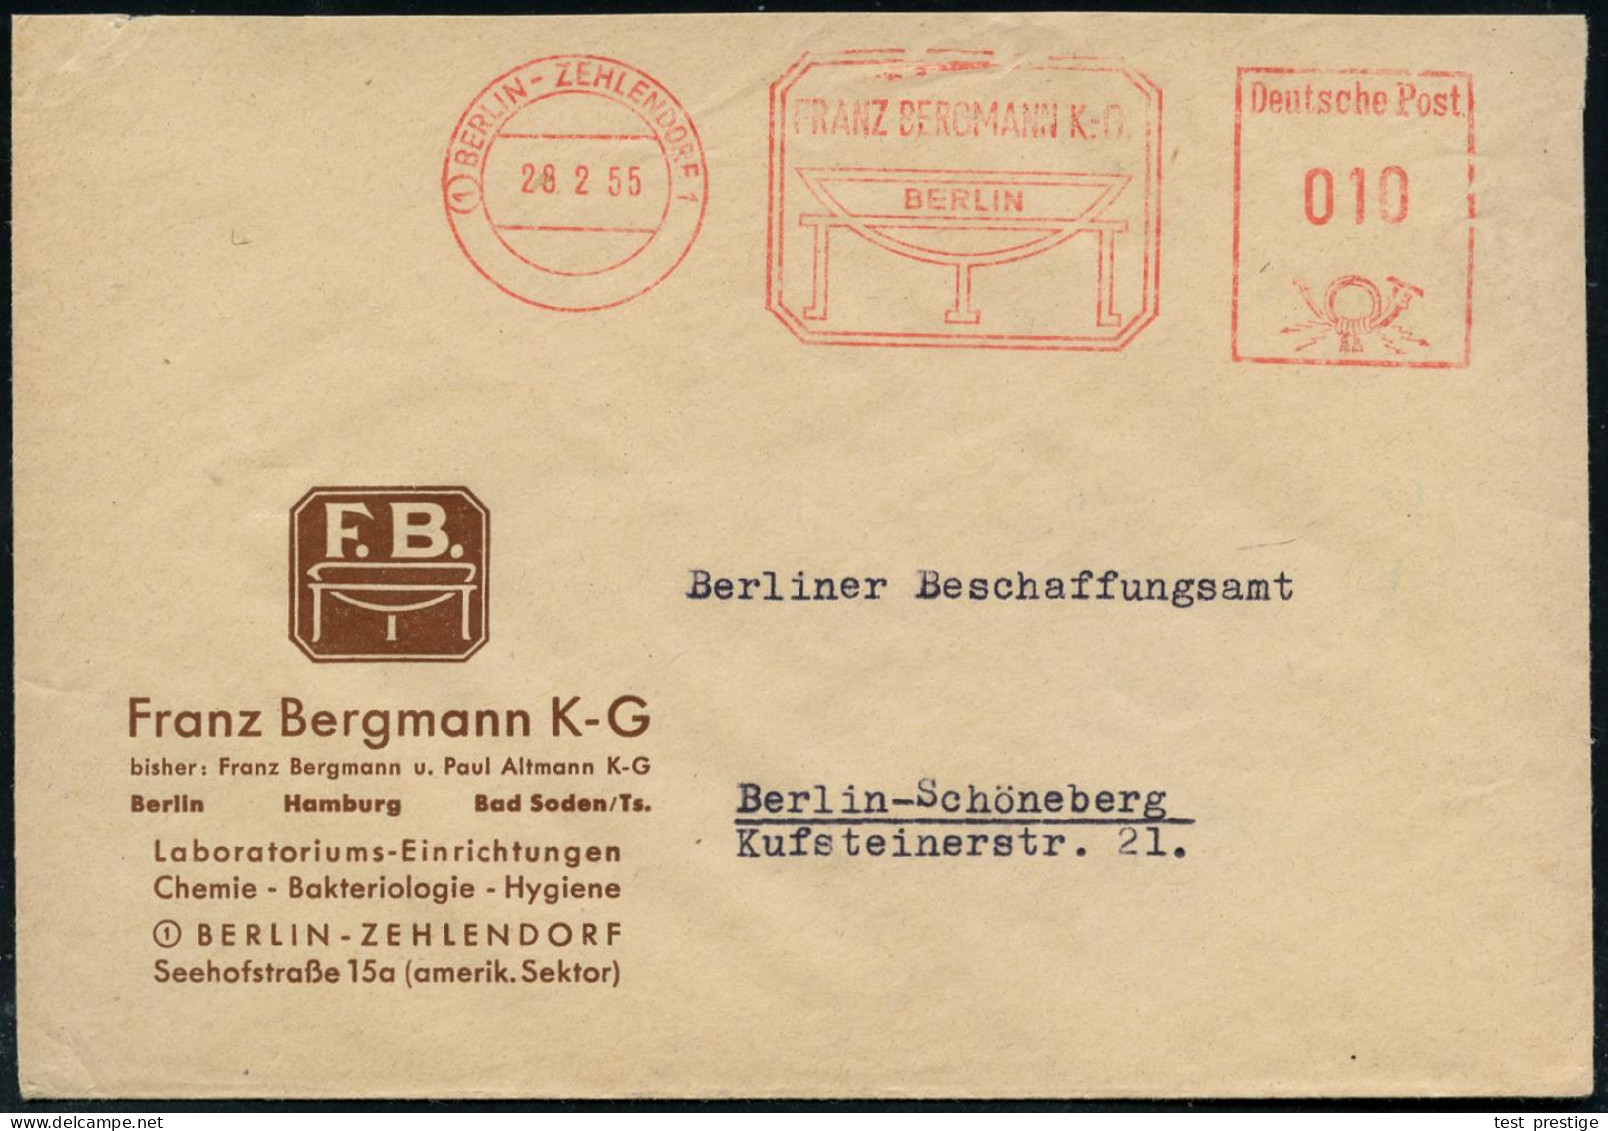 (1) BERLIN-ZEHLENDORF 1/ FRANZ BERGMANN KG. 1953 (12.11.) AFS (Schalen-Logo) Motivgl. Firmen-Bf.: Labora-toriums-Einrich - Medicina